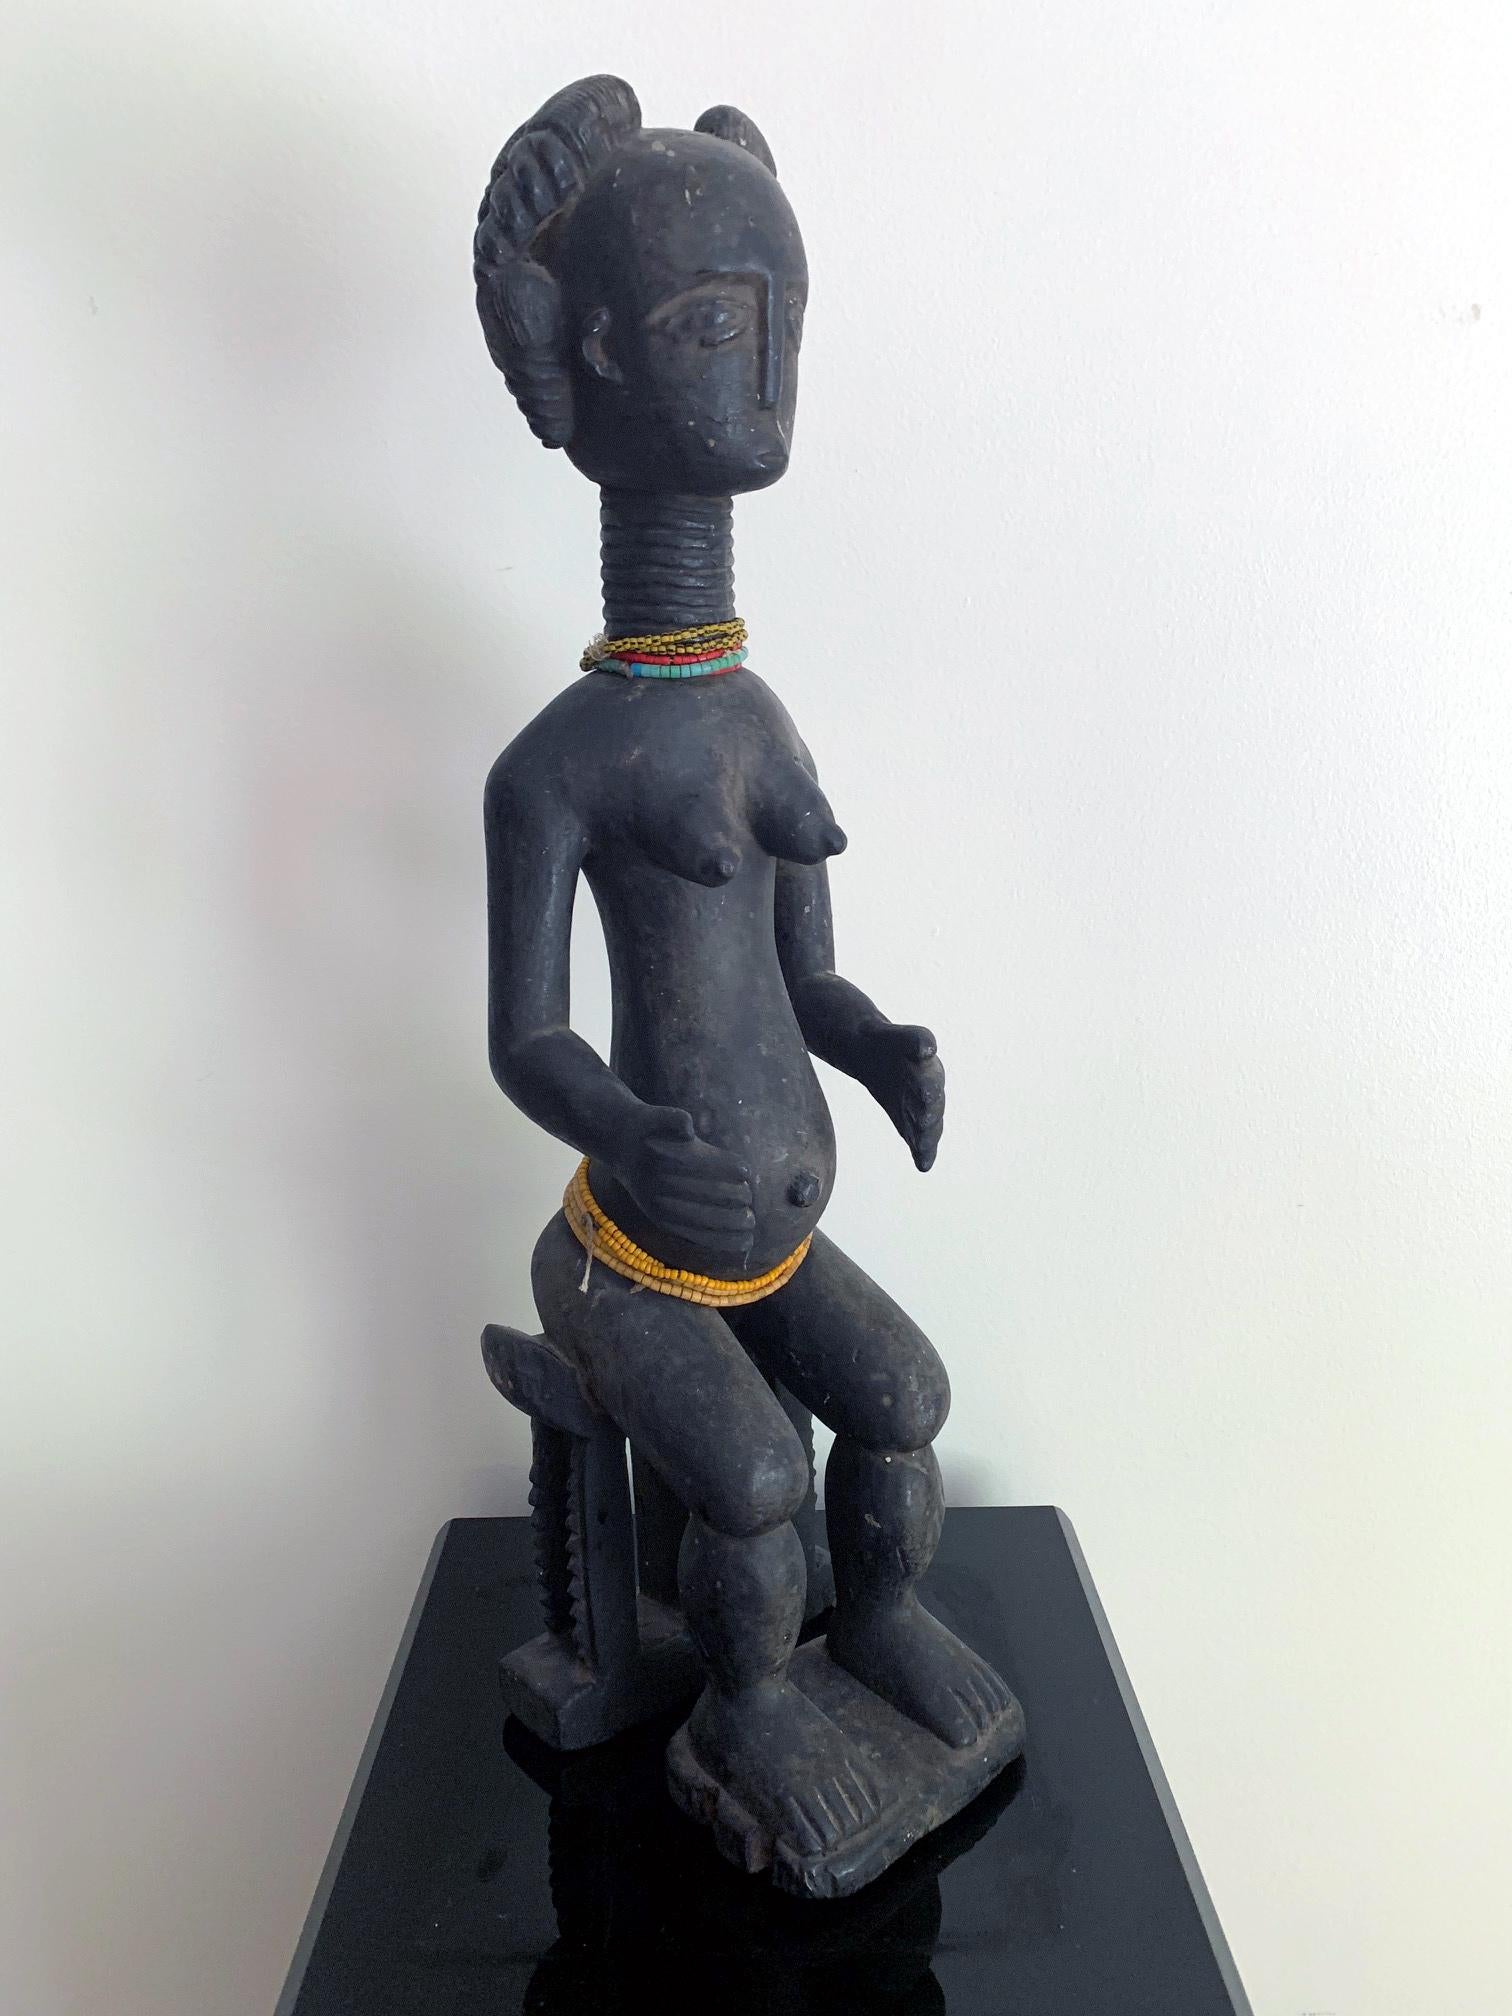 Angeboten wird eine weibliche Fruchtbarkeitsfigur der Ashanti aus Ghana, Westafrika, um die Mitte des 20. Jahrhunderts. Die aus einem einzigen Holzblock geschnitzte Statue stellt eine Frau mit typischer Frisur und Gesichtsausdruck dar, die auf einer